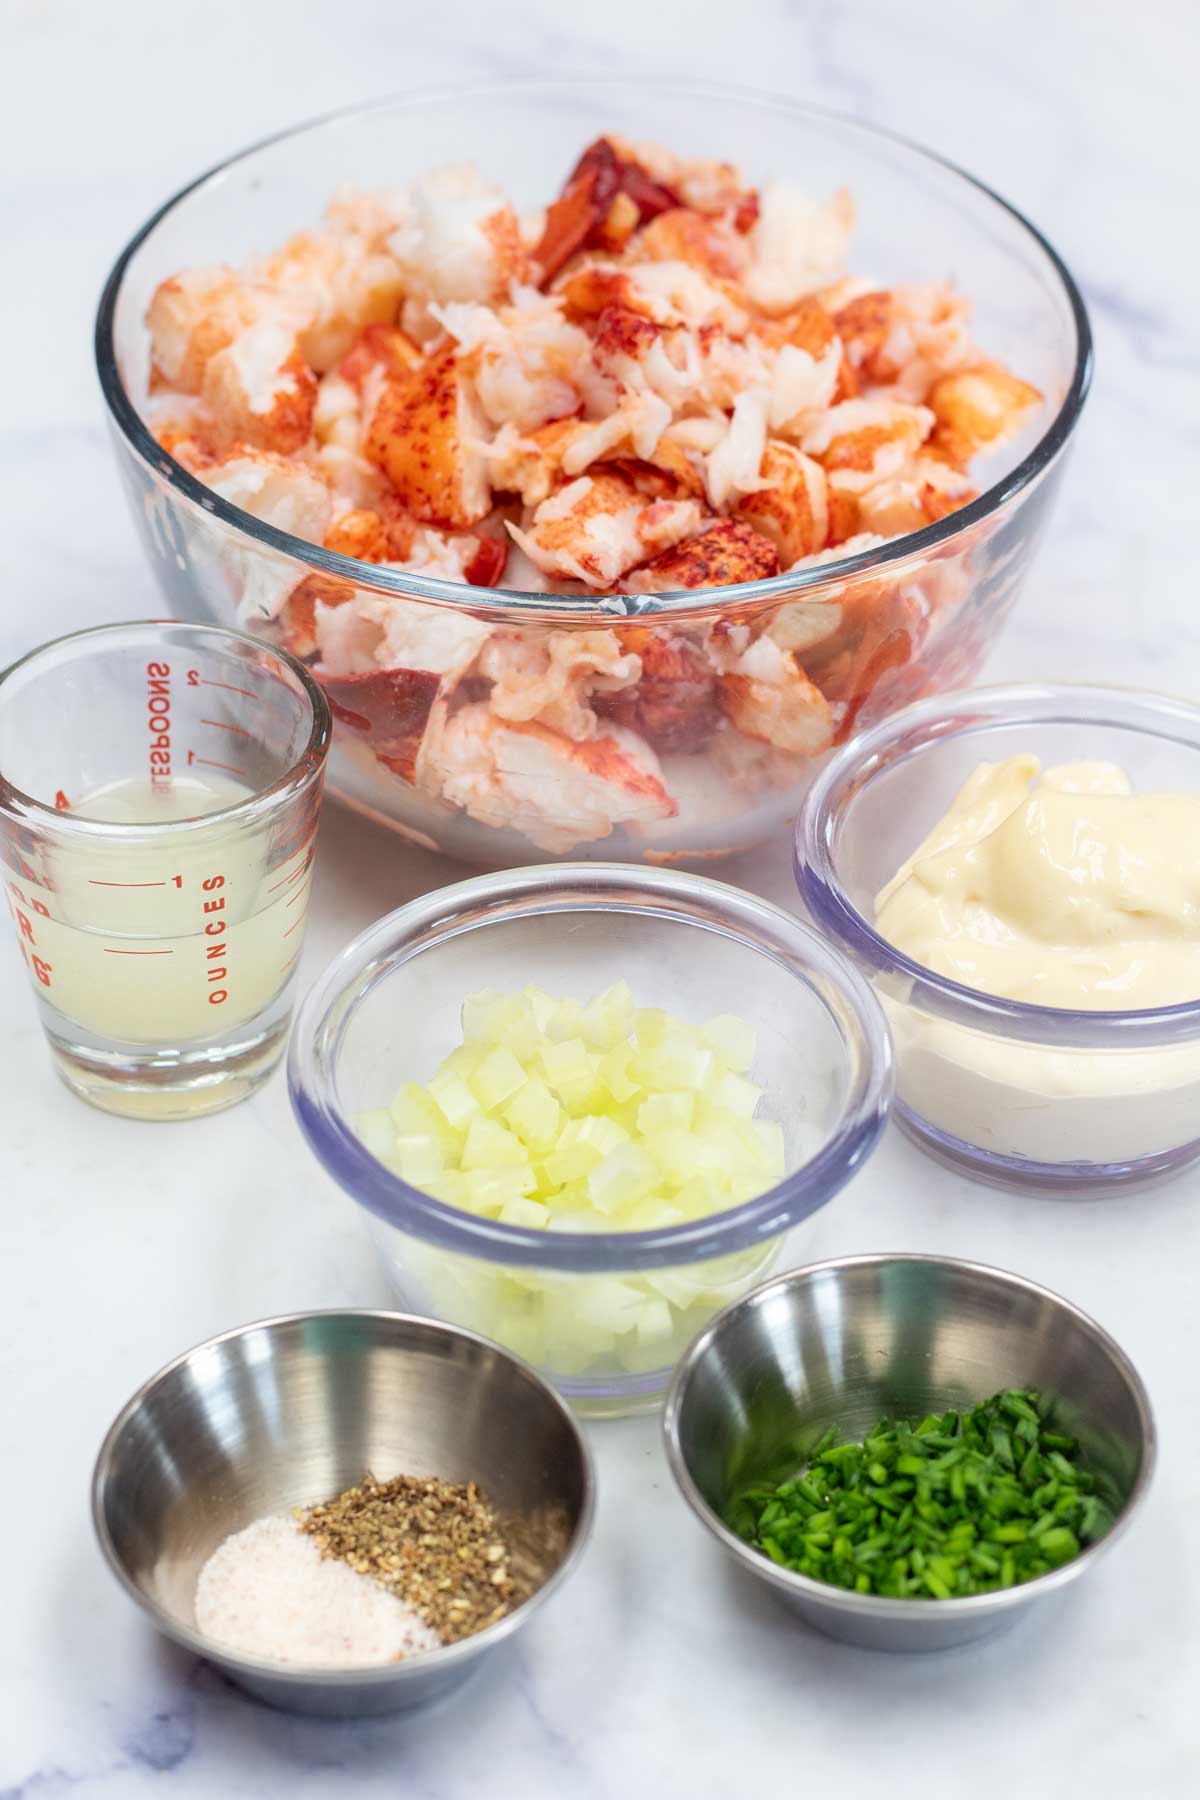 Immagine alta che mostra gli ingredienti dell'insalata di aragosta.